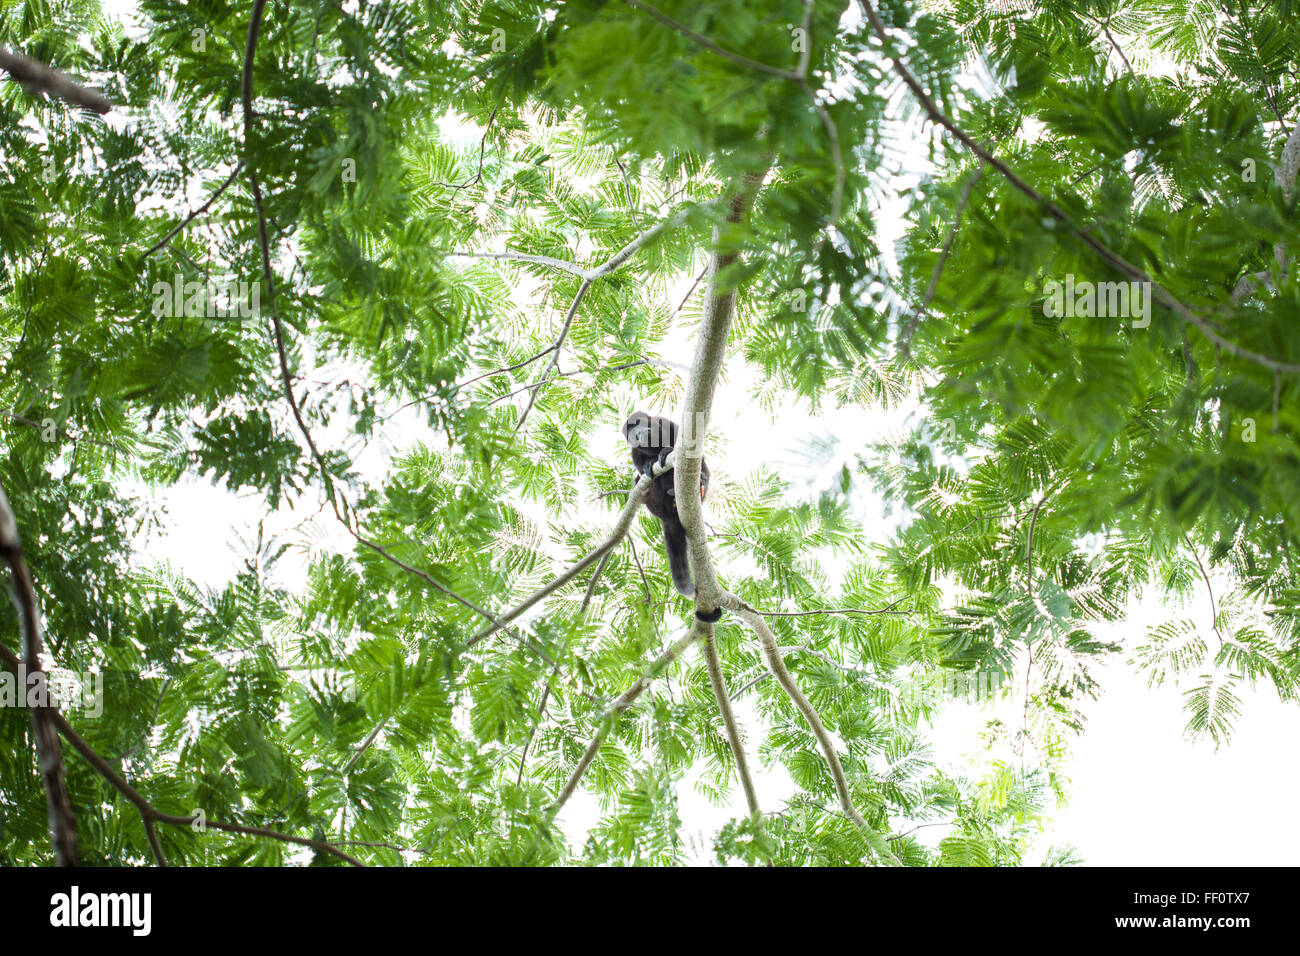 Une vue de dessous d'un singe hurleur dans un arbre en regardant le spectateur. Banque D'Images